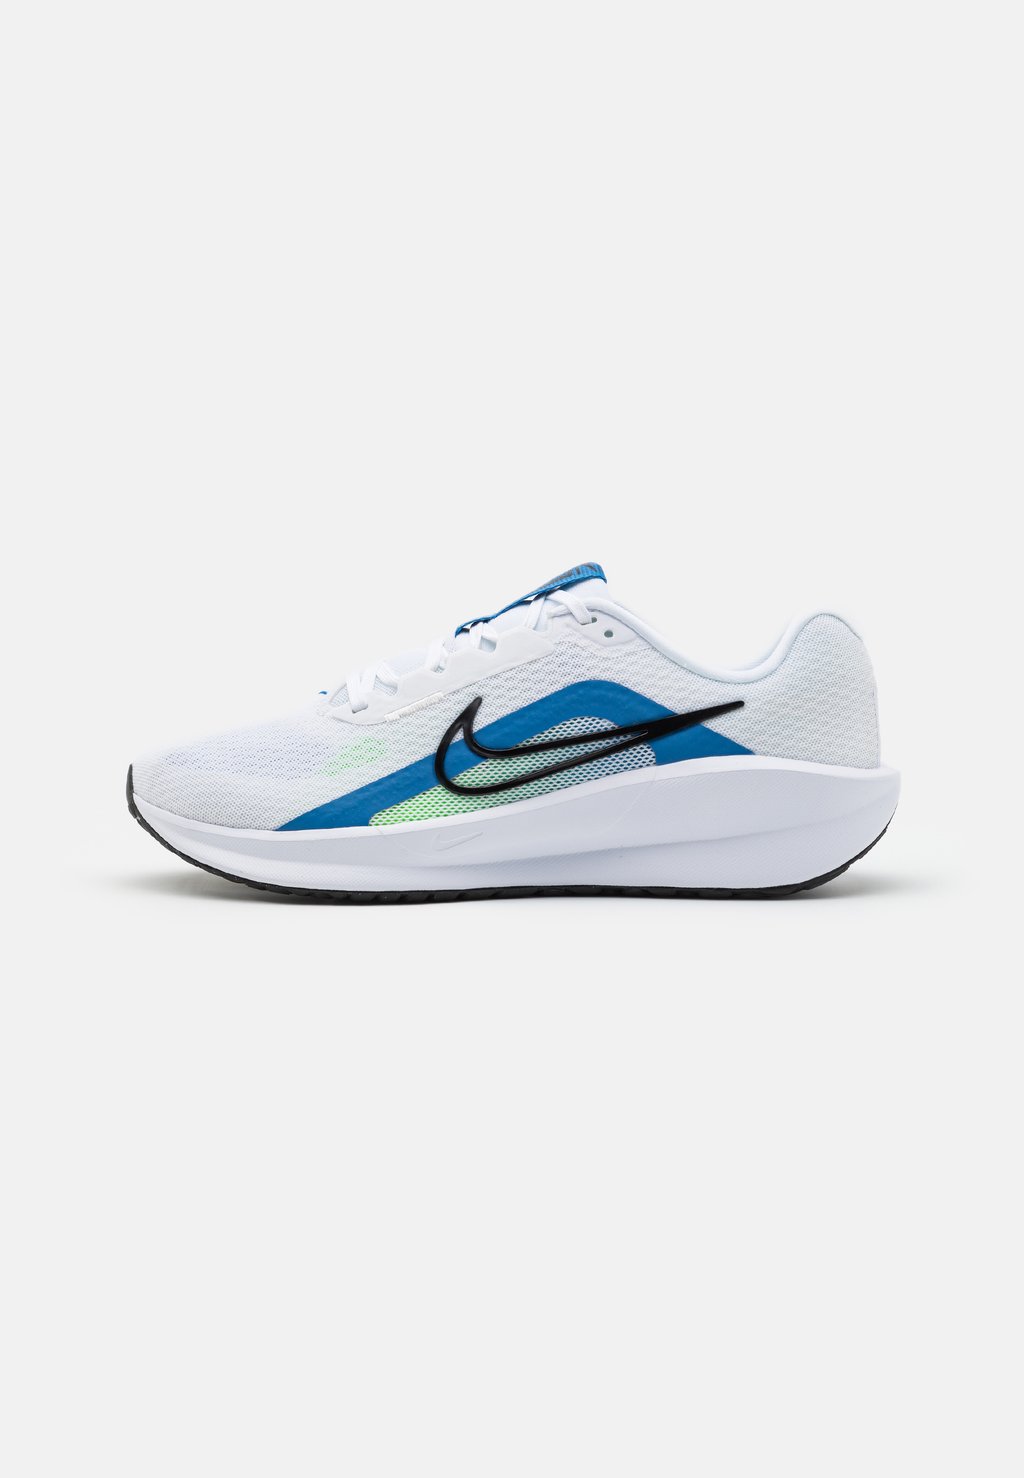 Нейтральные кроссовки DOWNSHIFTER 13 Nike, цвет white/black/star blue/green strike/light armoy blue/platinum tint